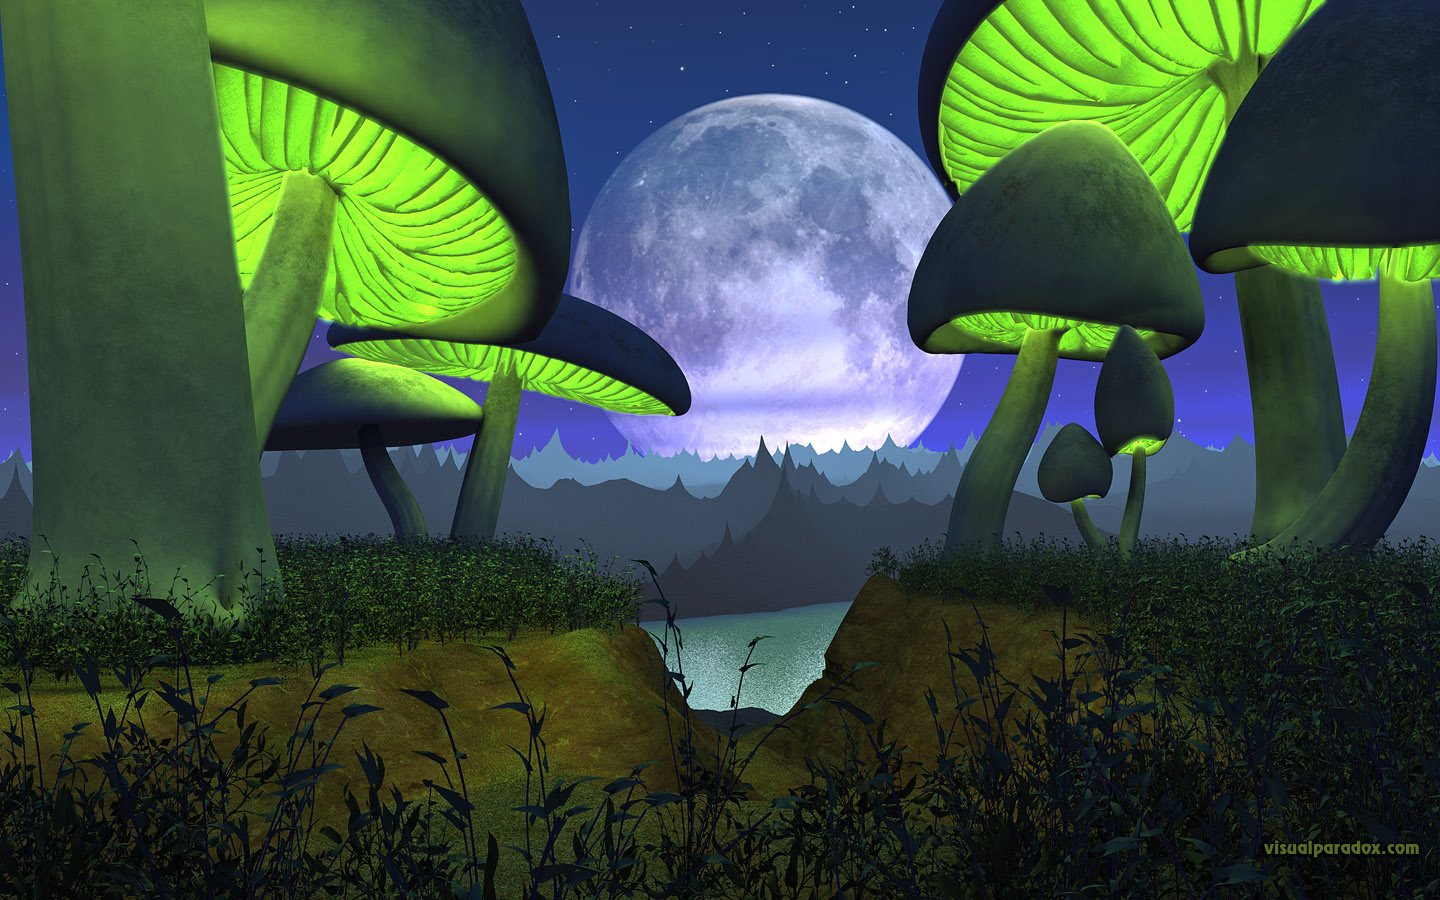 Alien Pla Moon Lunar Toadstool Mushroom Glowing Landscape